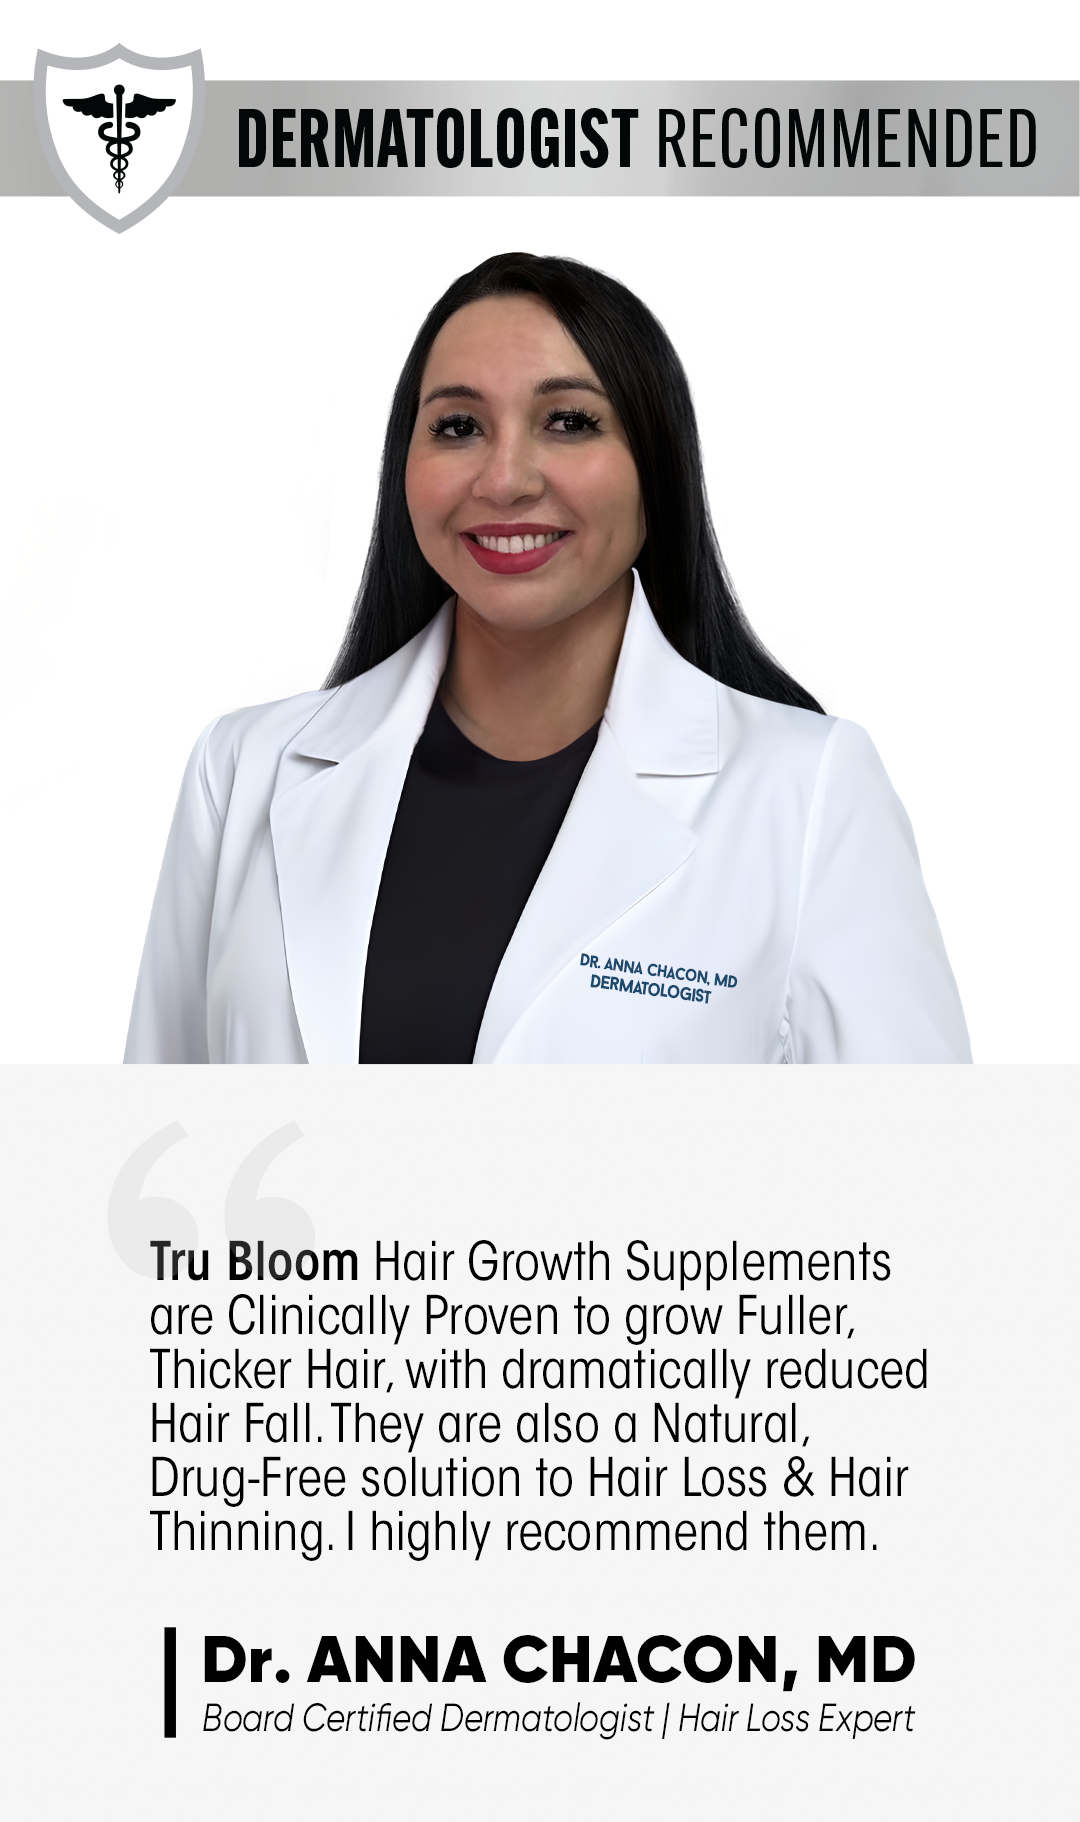 ST. TROPICA Hair Growth Vitamins